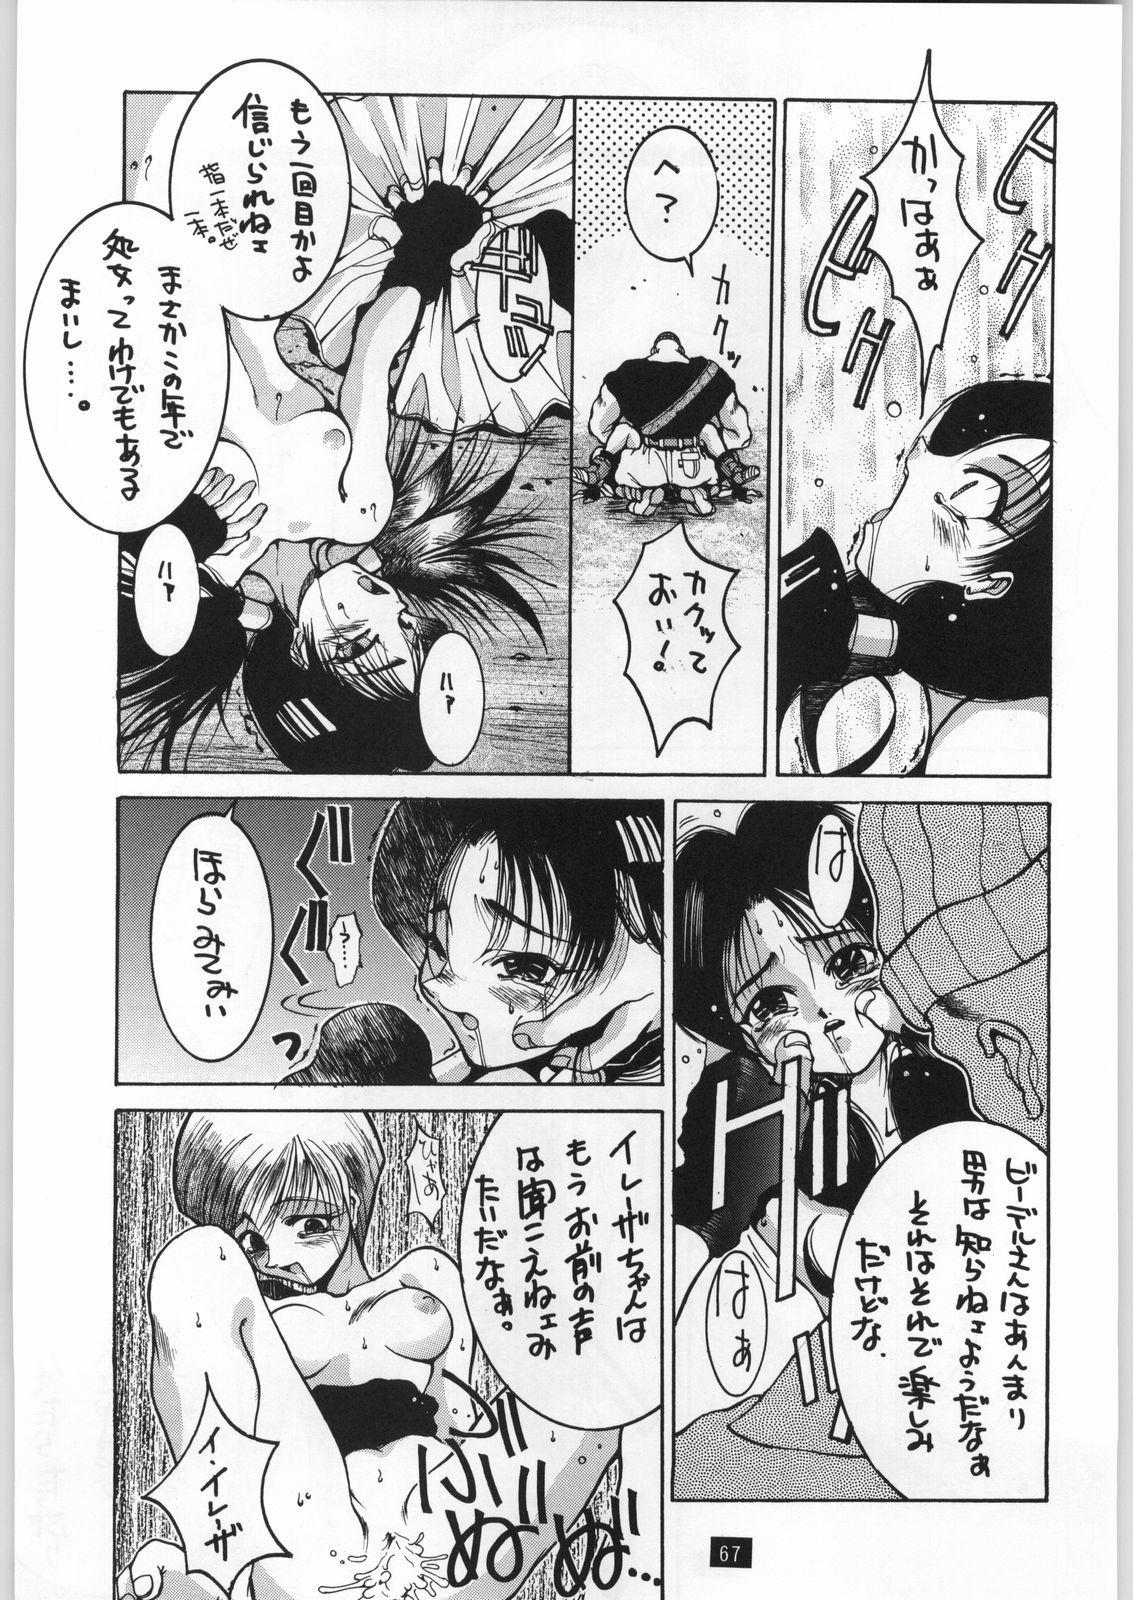 Ink Yamadataro - Dragon ball z Jerkoff - Page 11